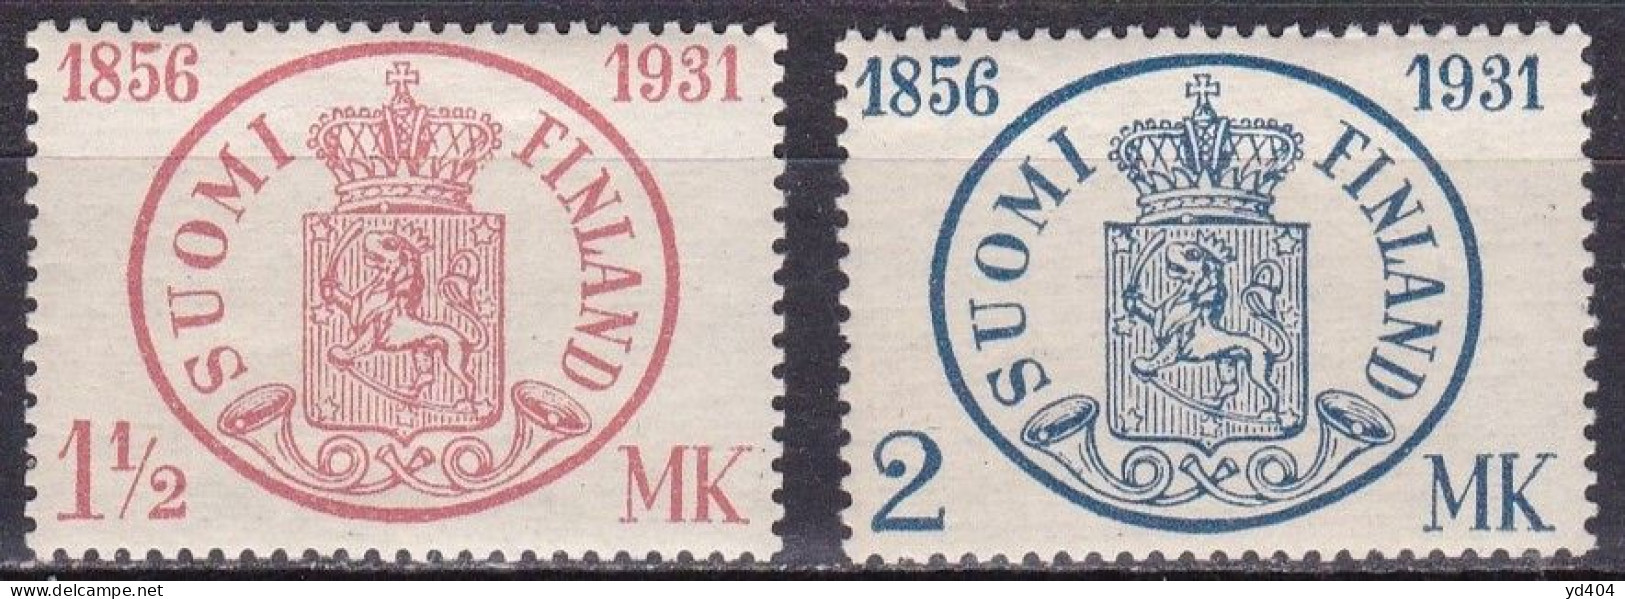 FI205 – FINLANDE – FINLAND – 1931 – ANNIV. OF FIRST STAMP – Y&T # 164/5 MNH 12,80 € - Neufs